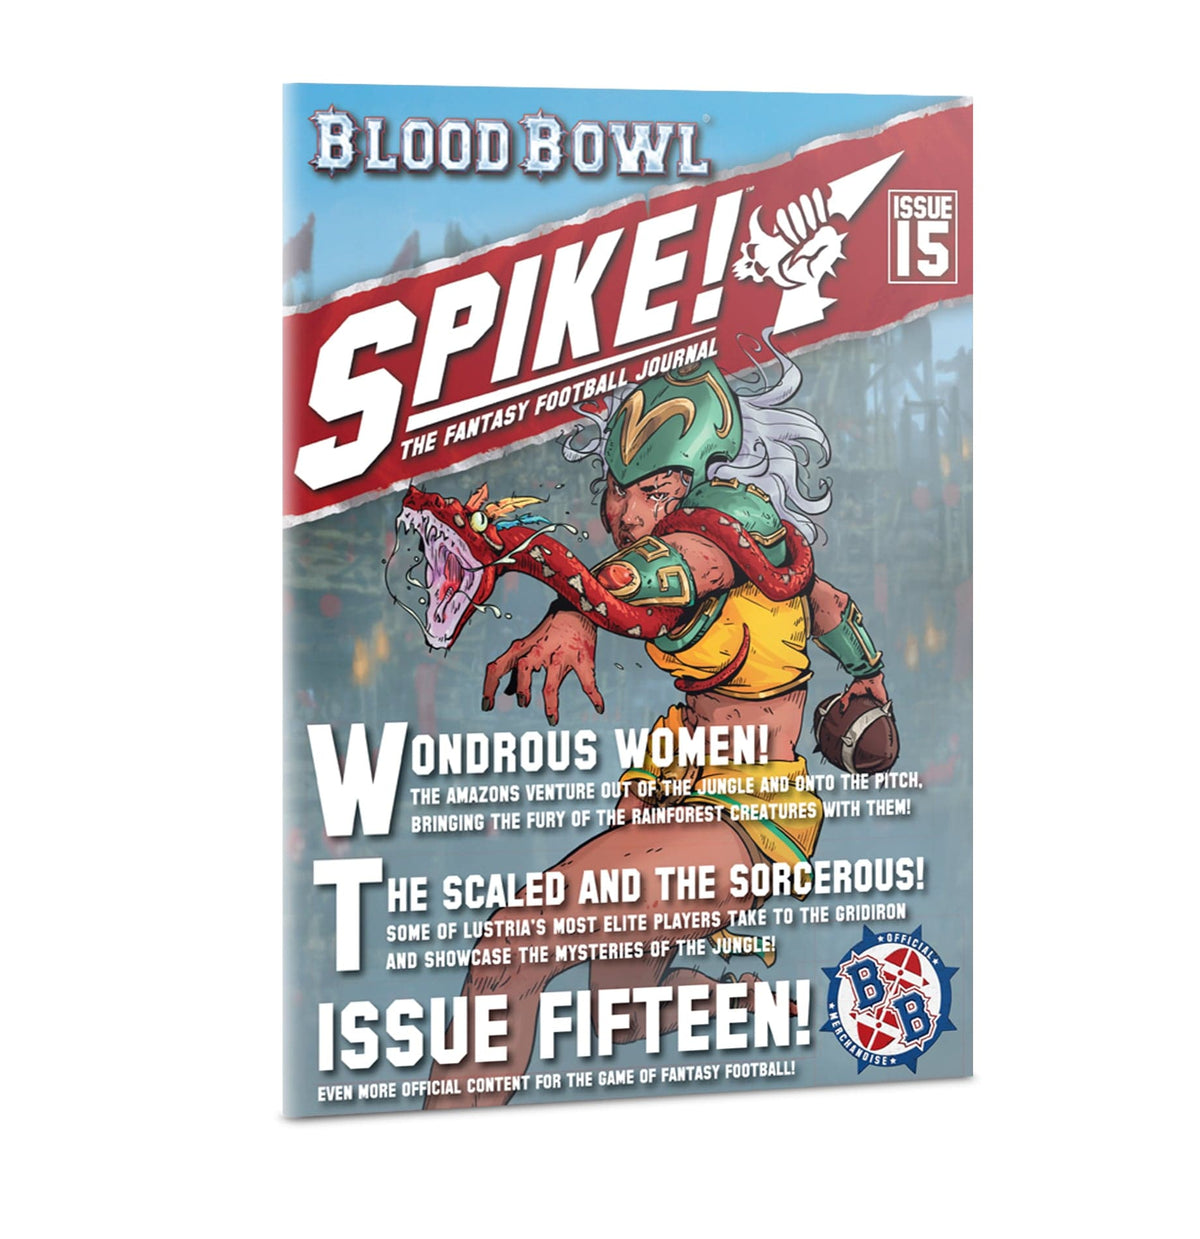 Warhammer - Bloodbowl: Spike! #15 - Third Eye